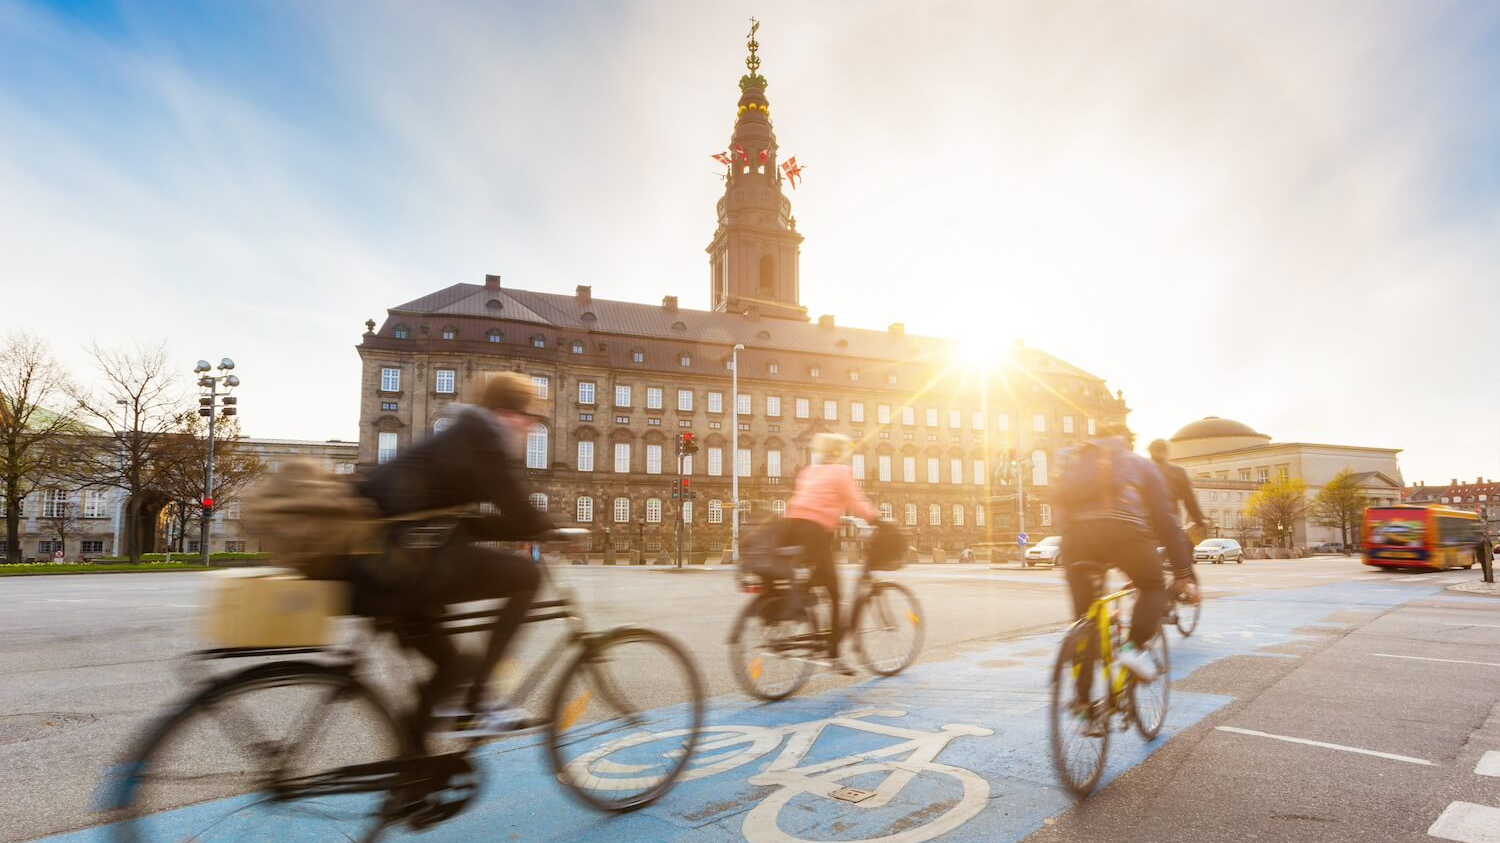 Fahrradfahrer:innen auf einem Radweg in der Innenstadt in Kopenhagen.